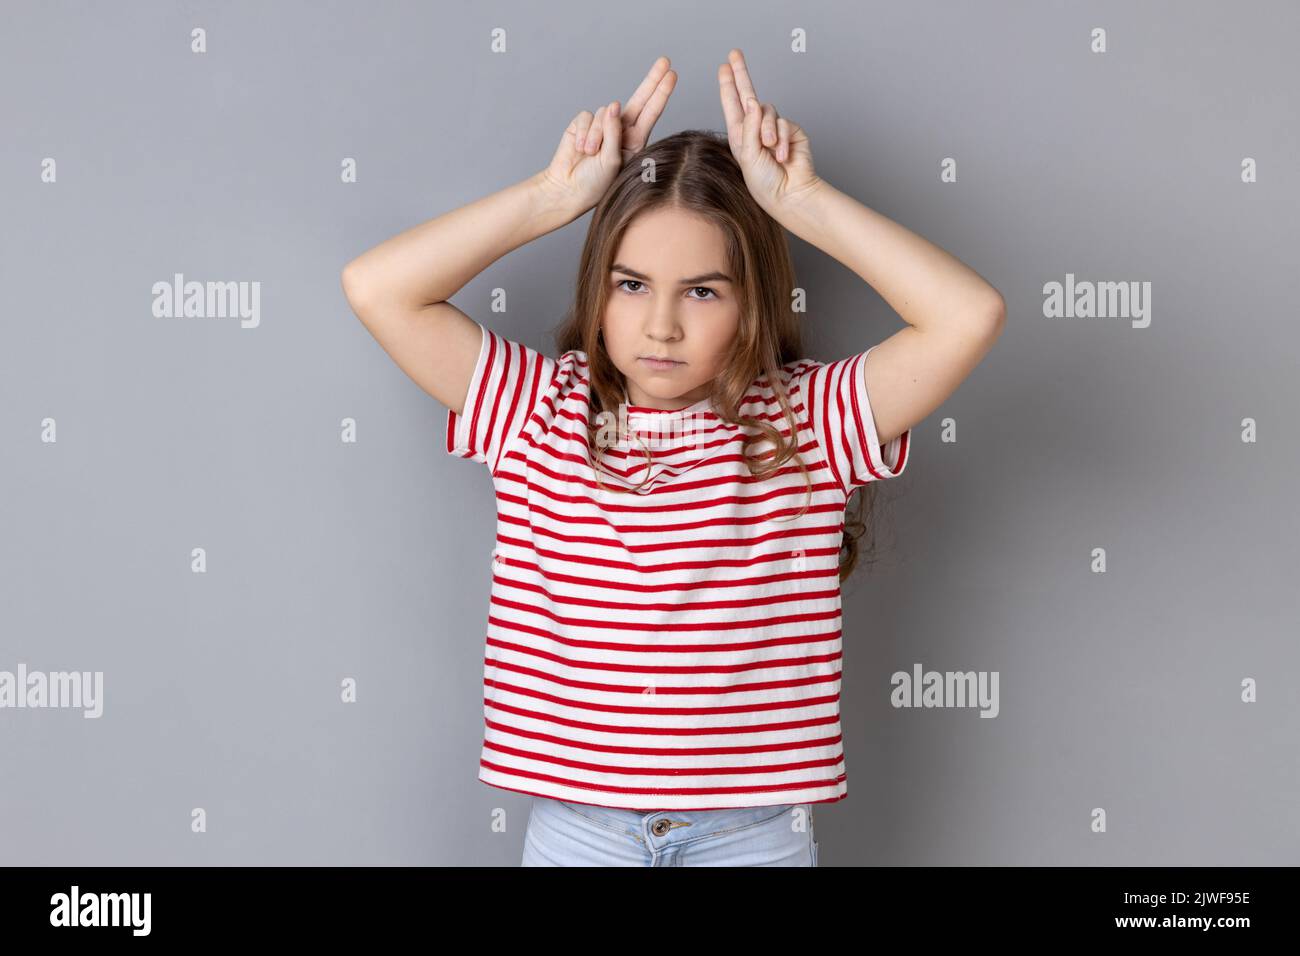 Porträt eines aggressiven, tyrannisierten kleinen Mädchens in einem gestreiften T-Shirt mit Stierhörnern über dem Kopf und Stirnrunzeln wie vor dem Angriff. Innenaufnahme des Studios isoliert auf grauem Hintergrund. Stockfoto